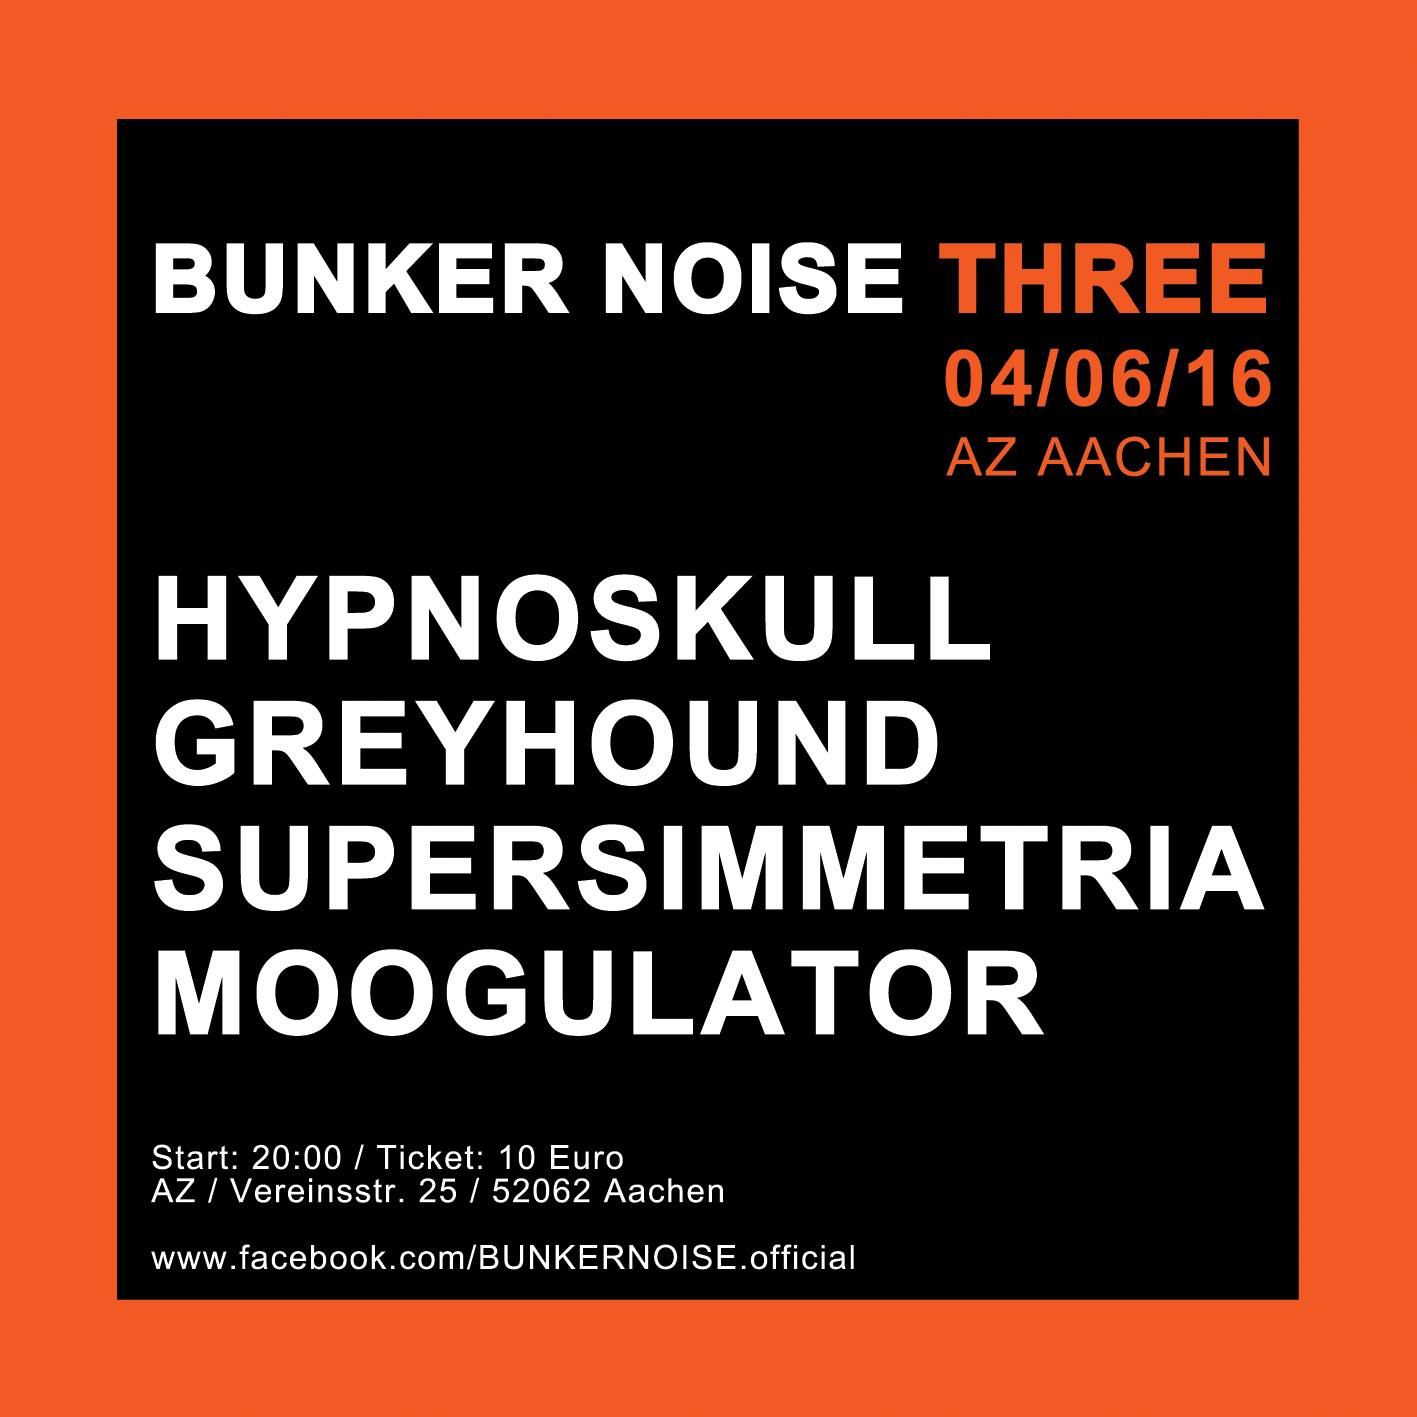 aachen-az-bunker-noise-3.jpg